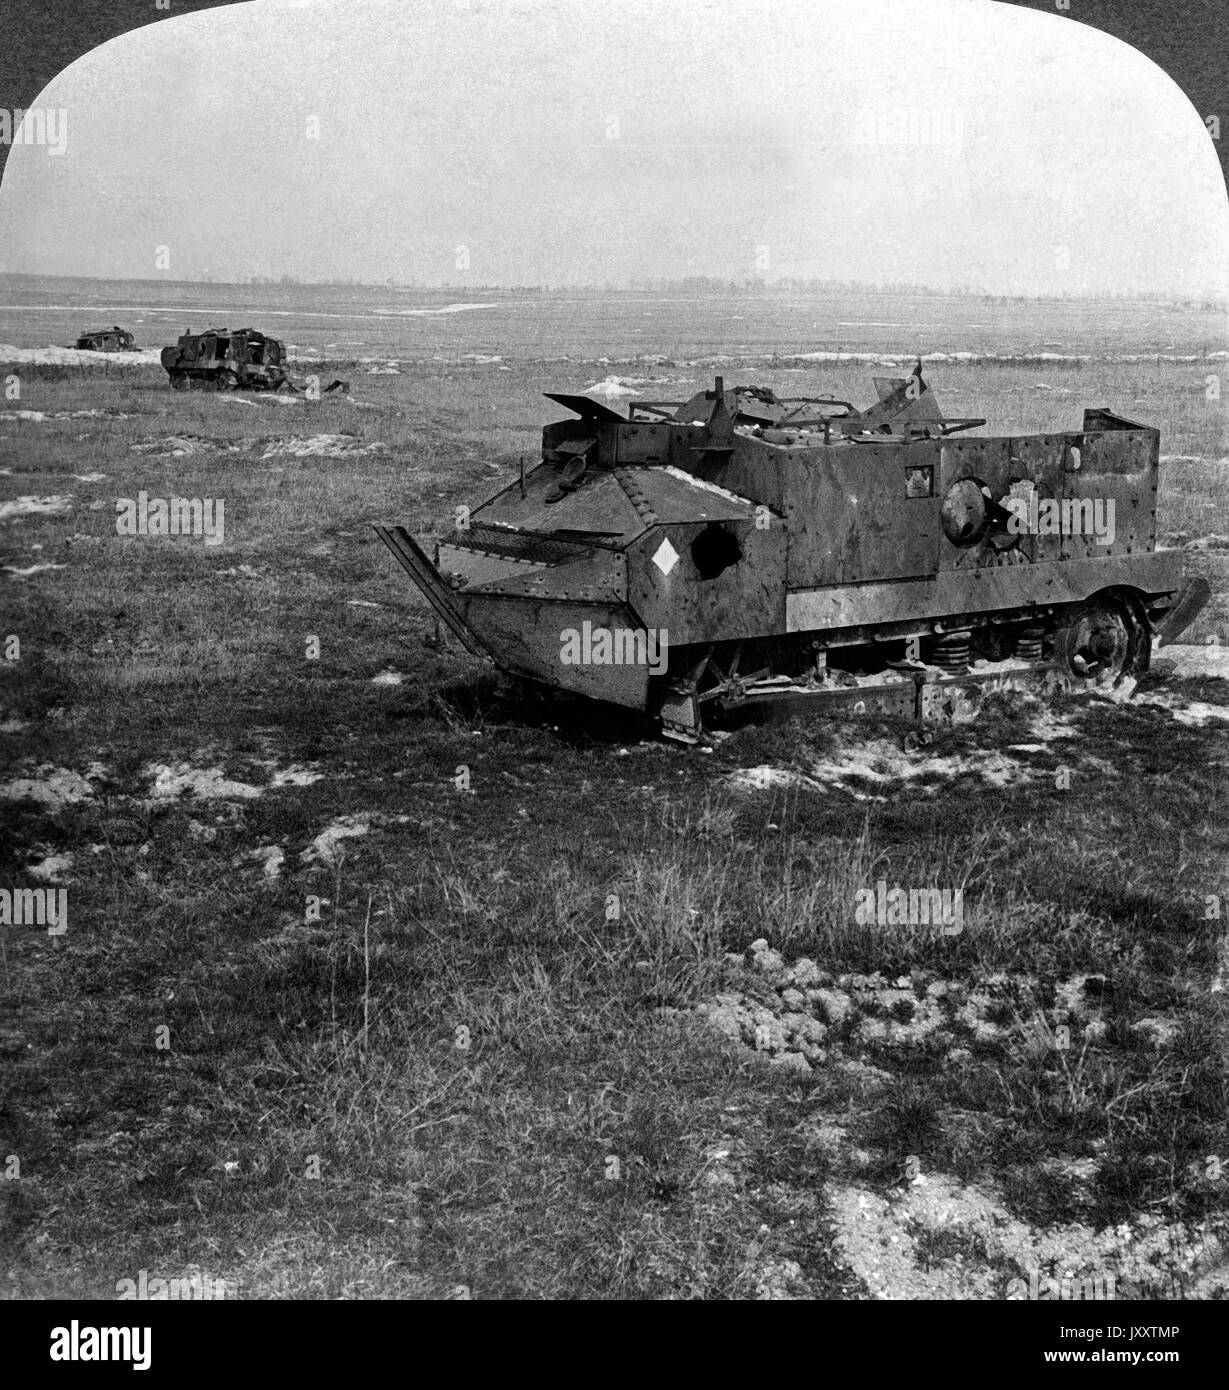 Die Schlacht ist zu Ende! Zerstörte französische Panzer bei Juvaincourt, Frankreich April 1917. The battle is over! French tanks destroyed at Juvaincourt, France, April 1917. Stock Photo